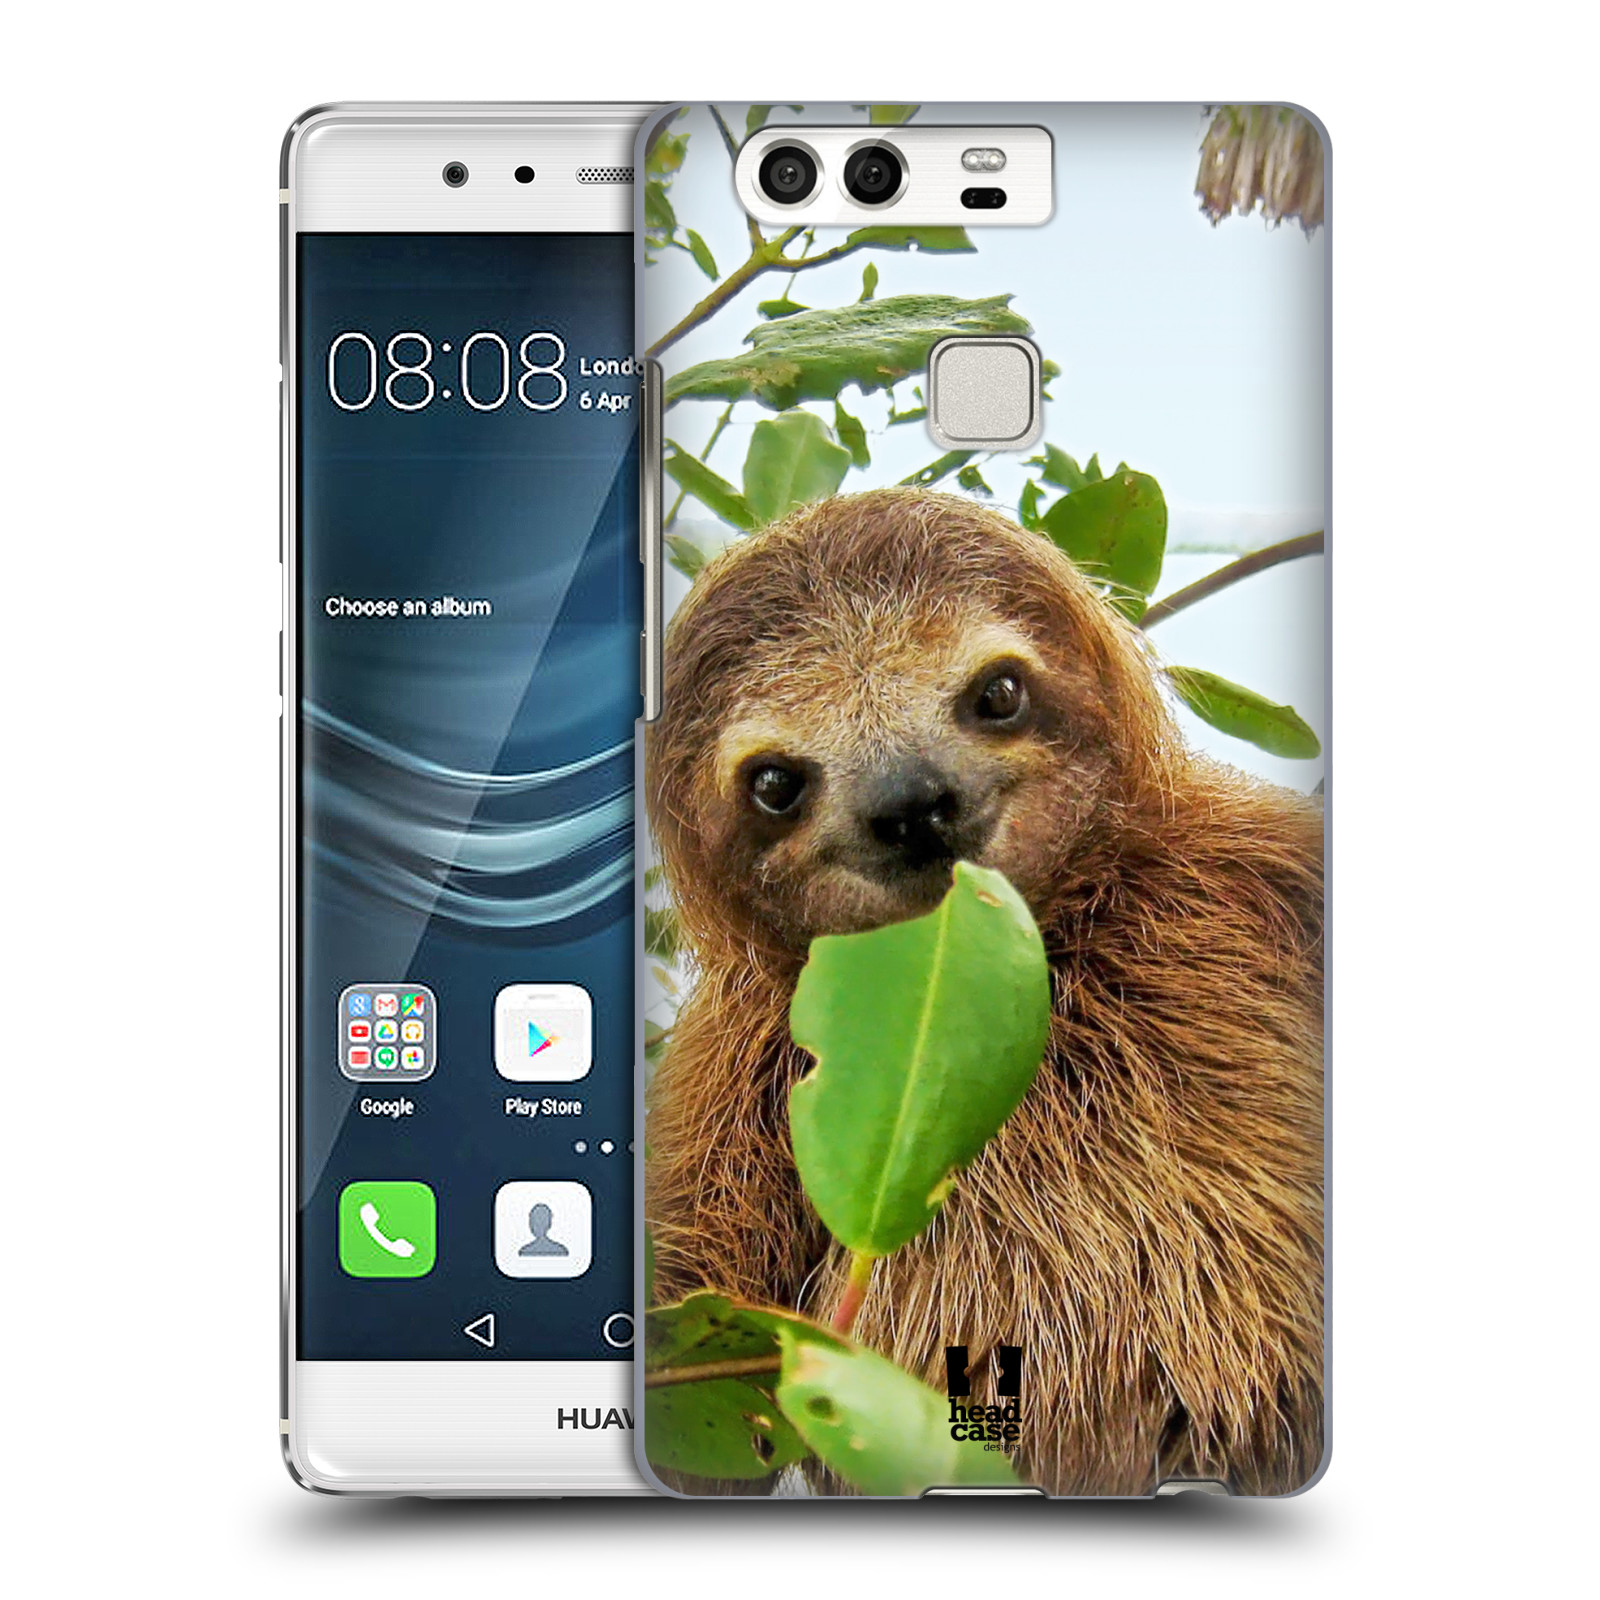 HEAD CASE plastový obal na mobil Huawei P9 / P9 DUAL SIM vzor slavná zvířata foto lenochod